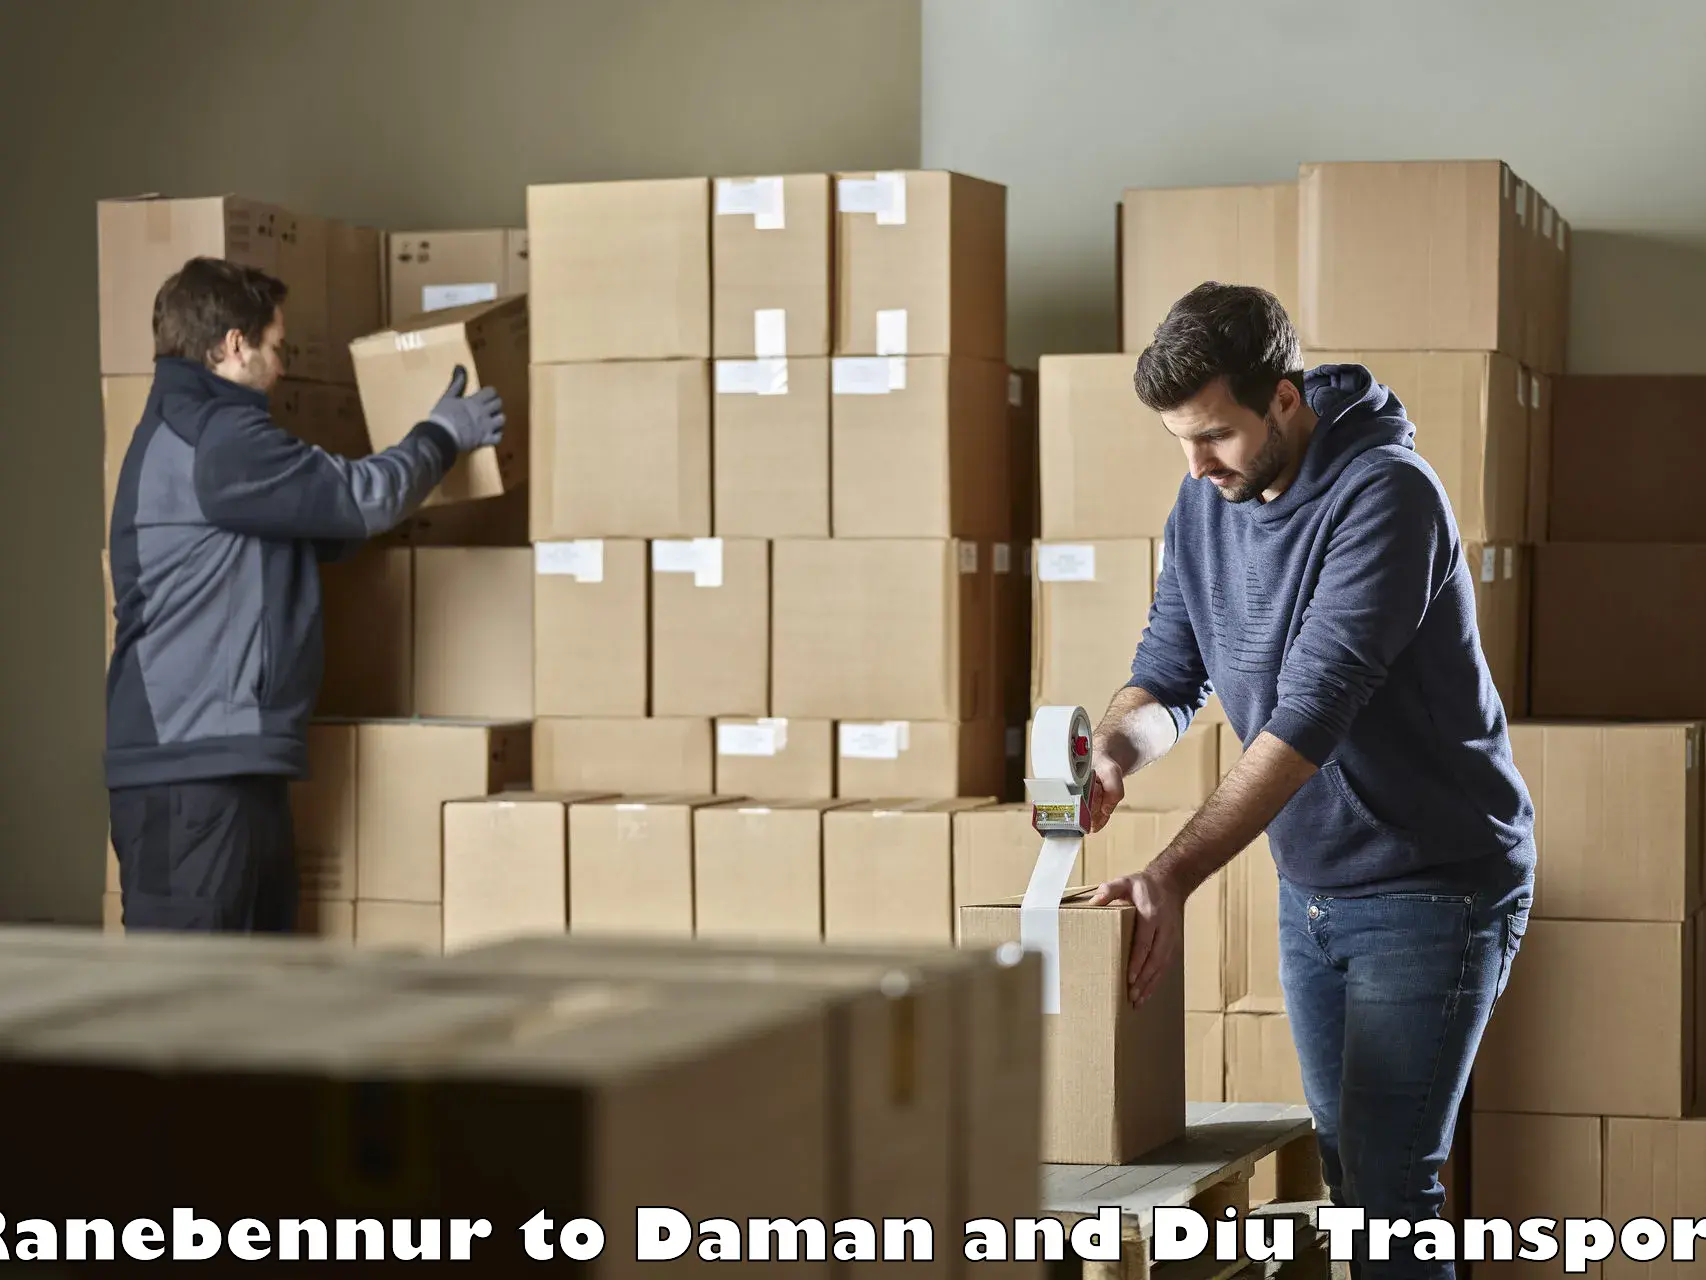 Transport shared services Ranebennur to Daman